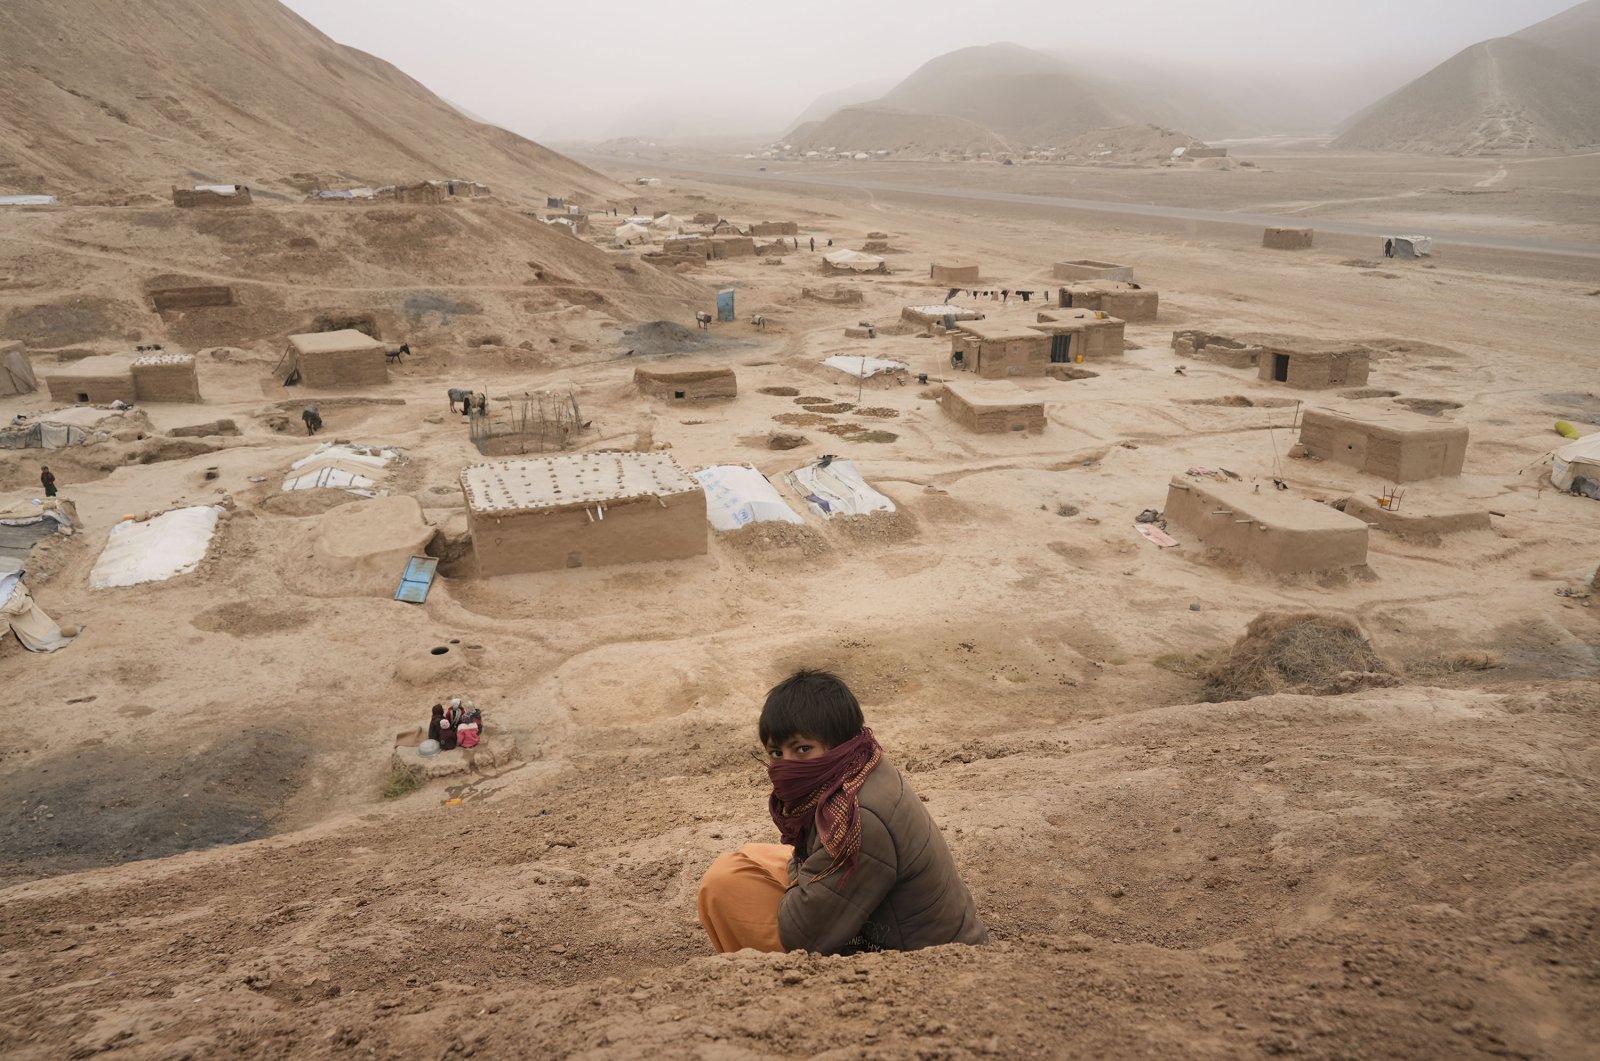 Korban tewas gempa Afghanistan meningkat menjadi 26, termasuk anak-anak: UN